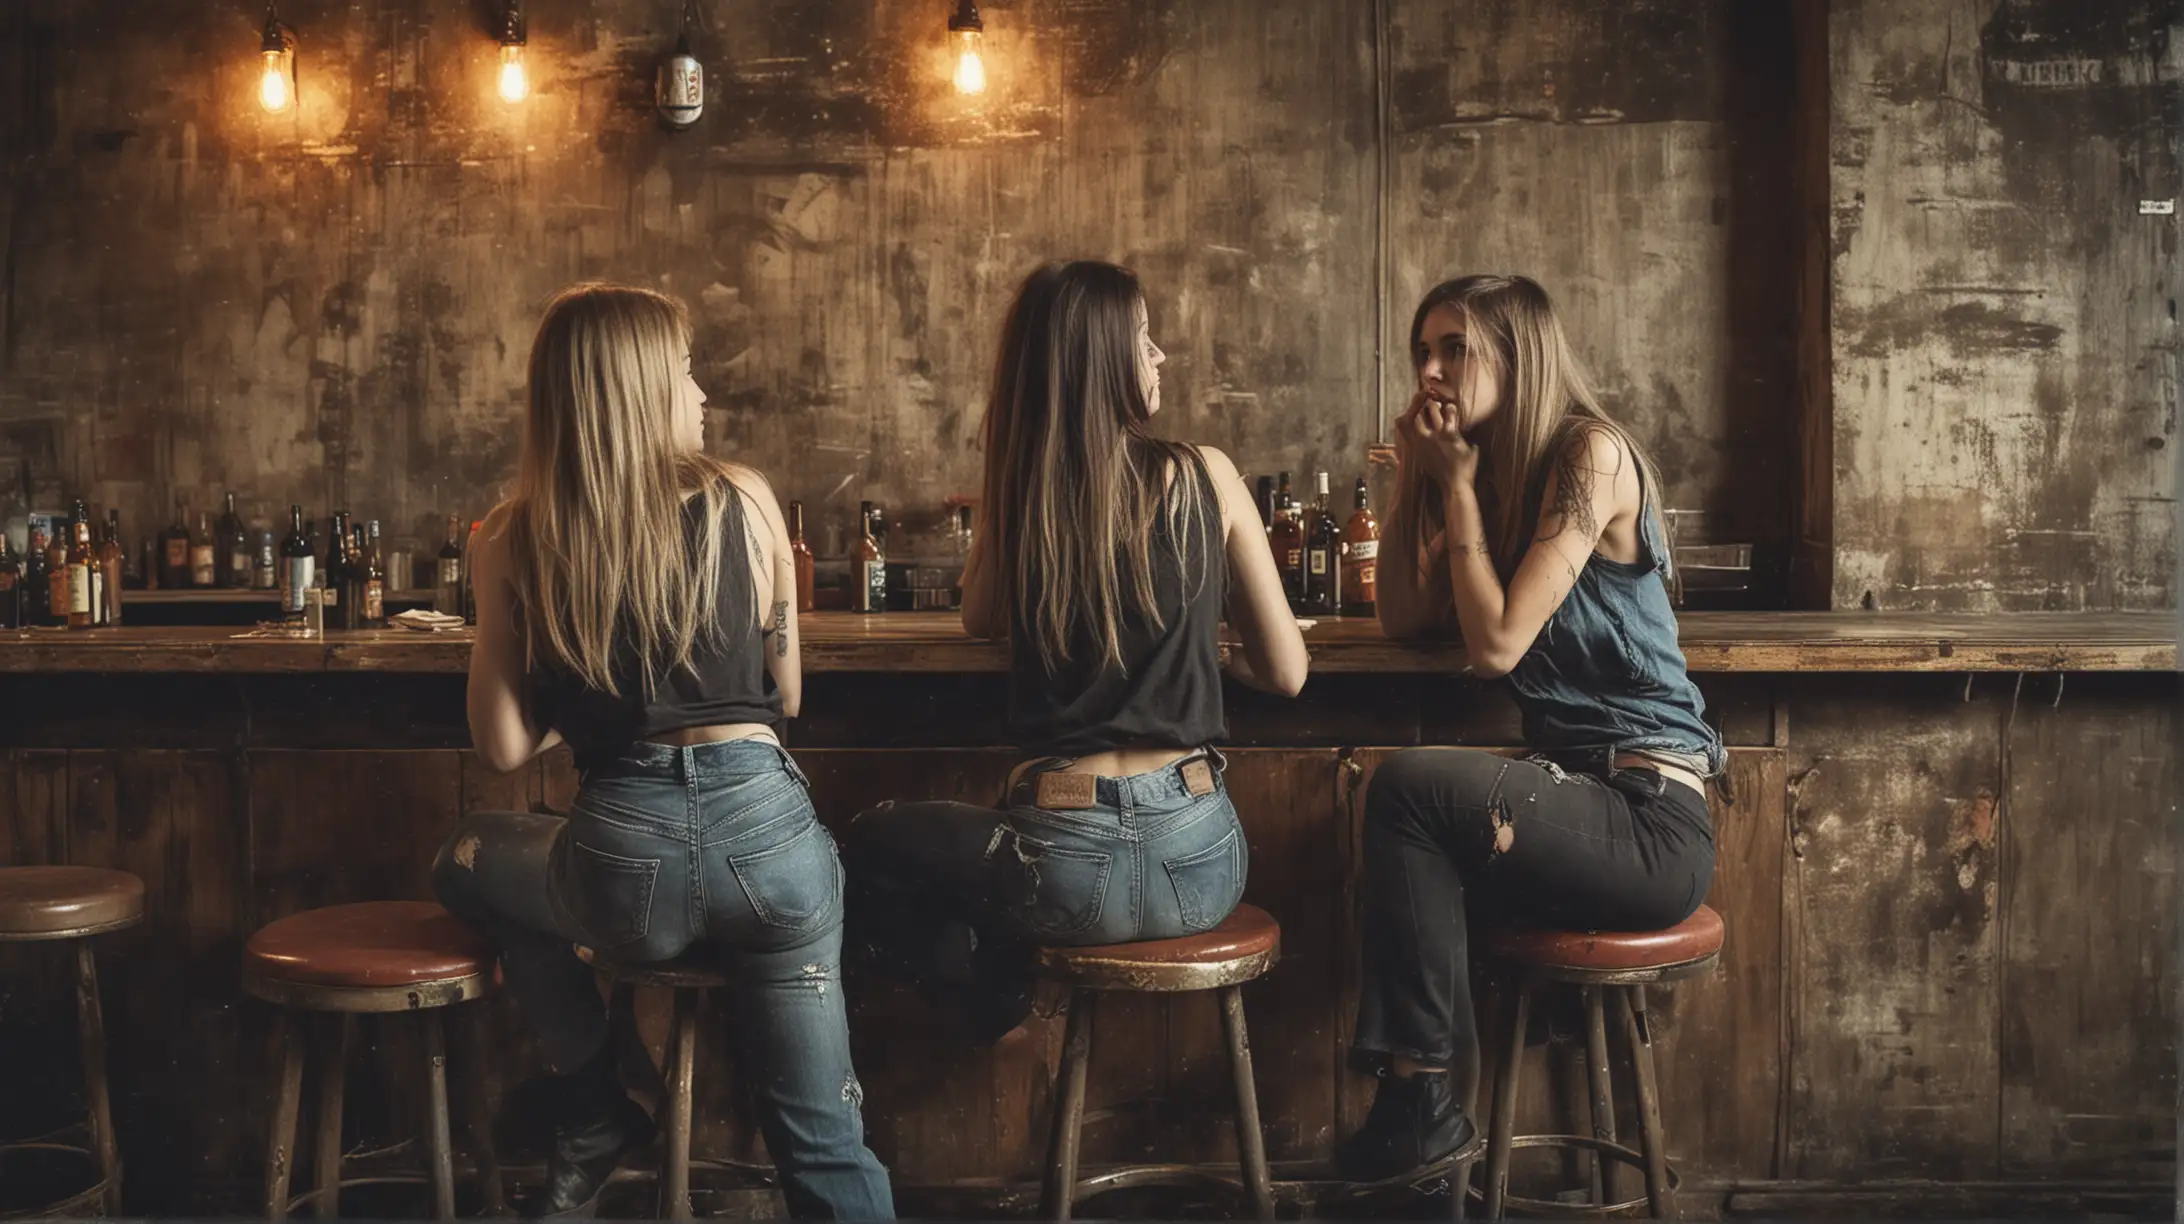 Group of Women Conversing in Urban Grunge Bar Setting